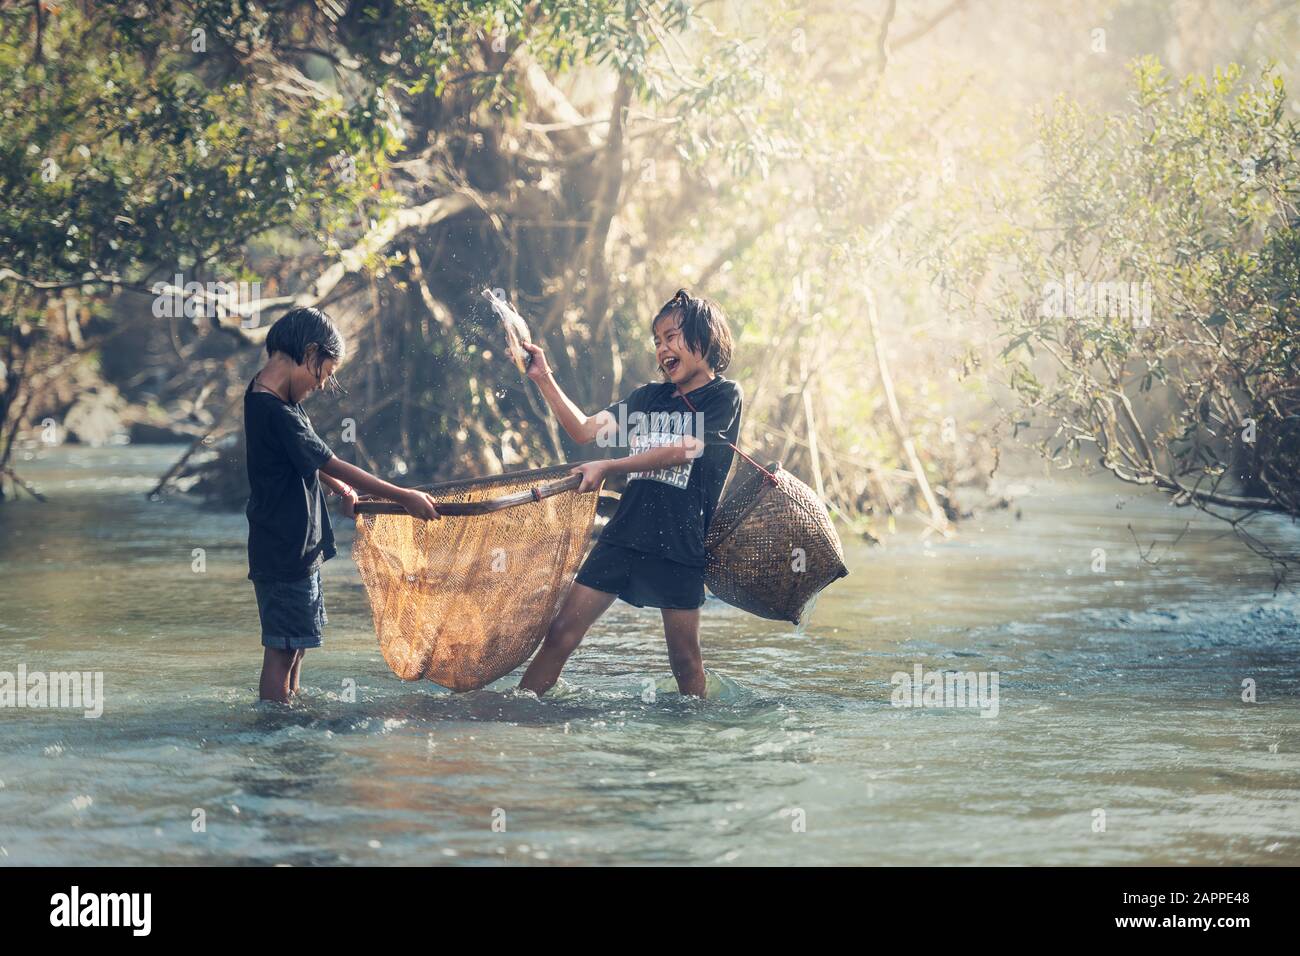 Les filles asiatiques pêchent au bord de la rivière Banque D'Images